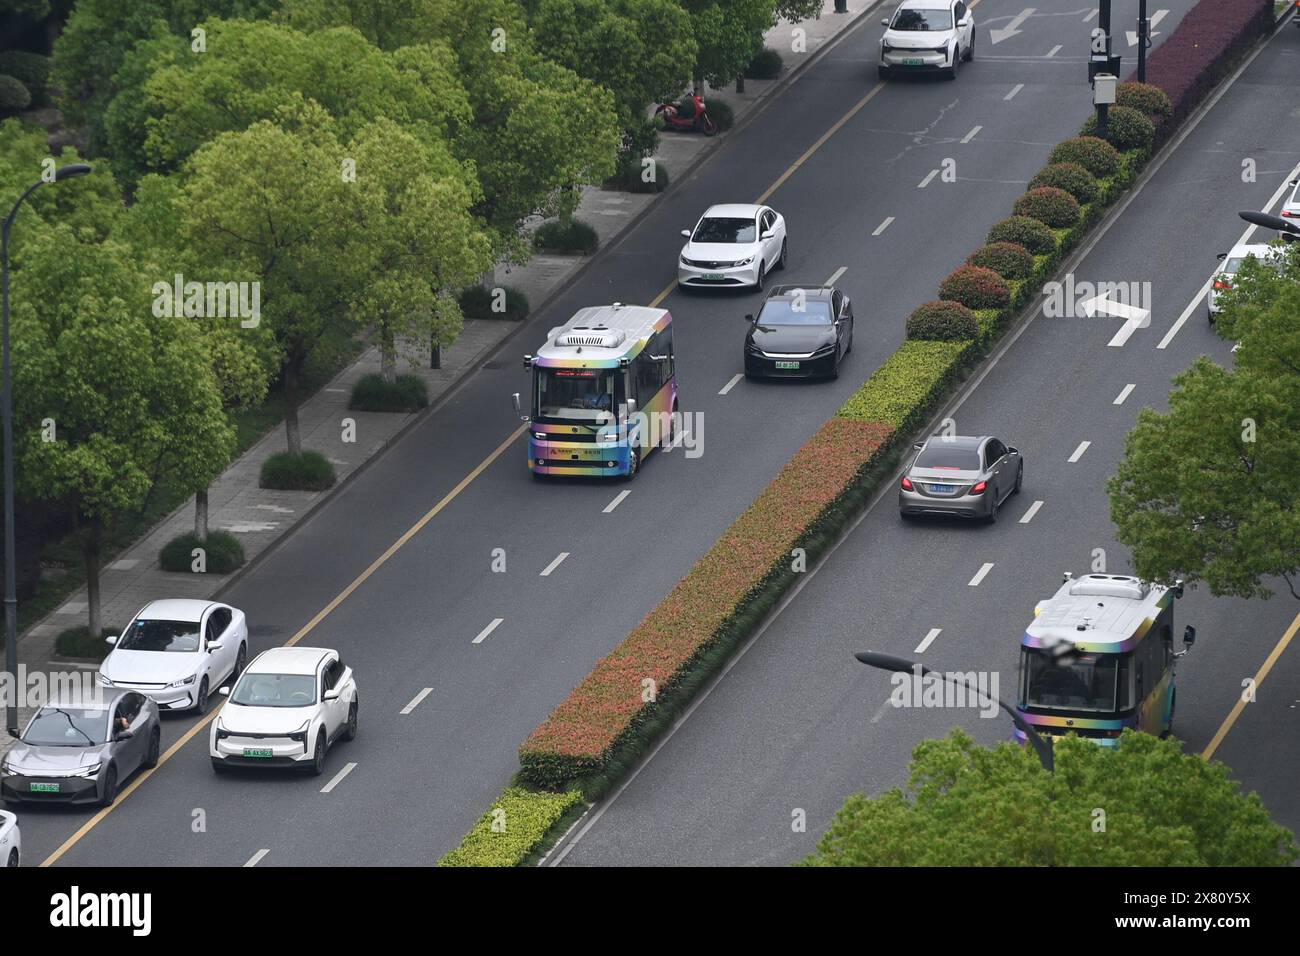 (240522) -- HANGZHOU, 22 mai 2024 (Xinhua) -- un minibus à conduite autonome circule sur une route dans le district de Yuhang, ville de Hangzhou, province du Zhejiang, dans l'est de la Chine, 22 mai 2024. La ligne de bus de conduite autonome dans le district de Yuhang est la première de son genre alimentée par la technologie de coordination véhicule-route à Hangzhou. Cette ligne de bus de 5 kilomètres serpente à travers les écoles, les parcs industriels, les complexes résidentiels et les stations de métro, gratuitement pour tous les citoyens. Les bus à conduite autonome réalisent une détection holographique du réseau routier grâce à des dispositifs de détection intelligents tels que des caméras haute définition et RA Banque D'Images